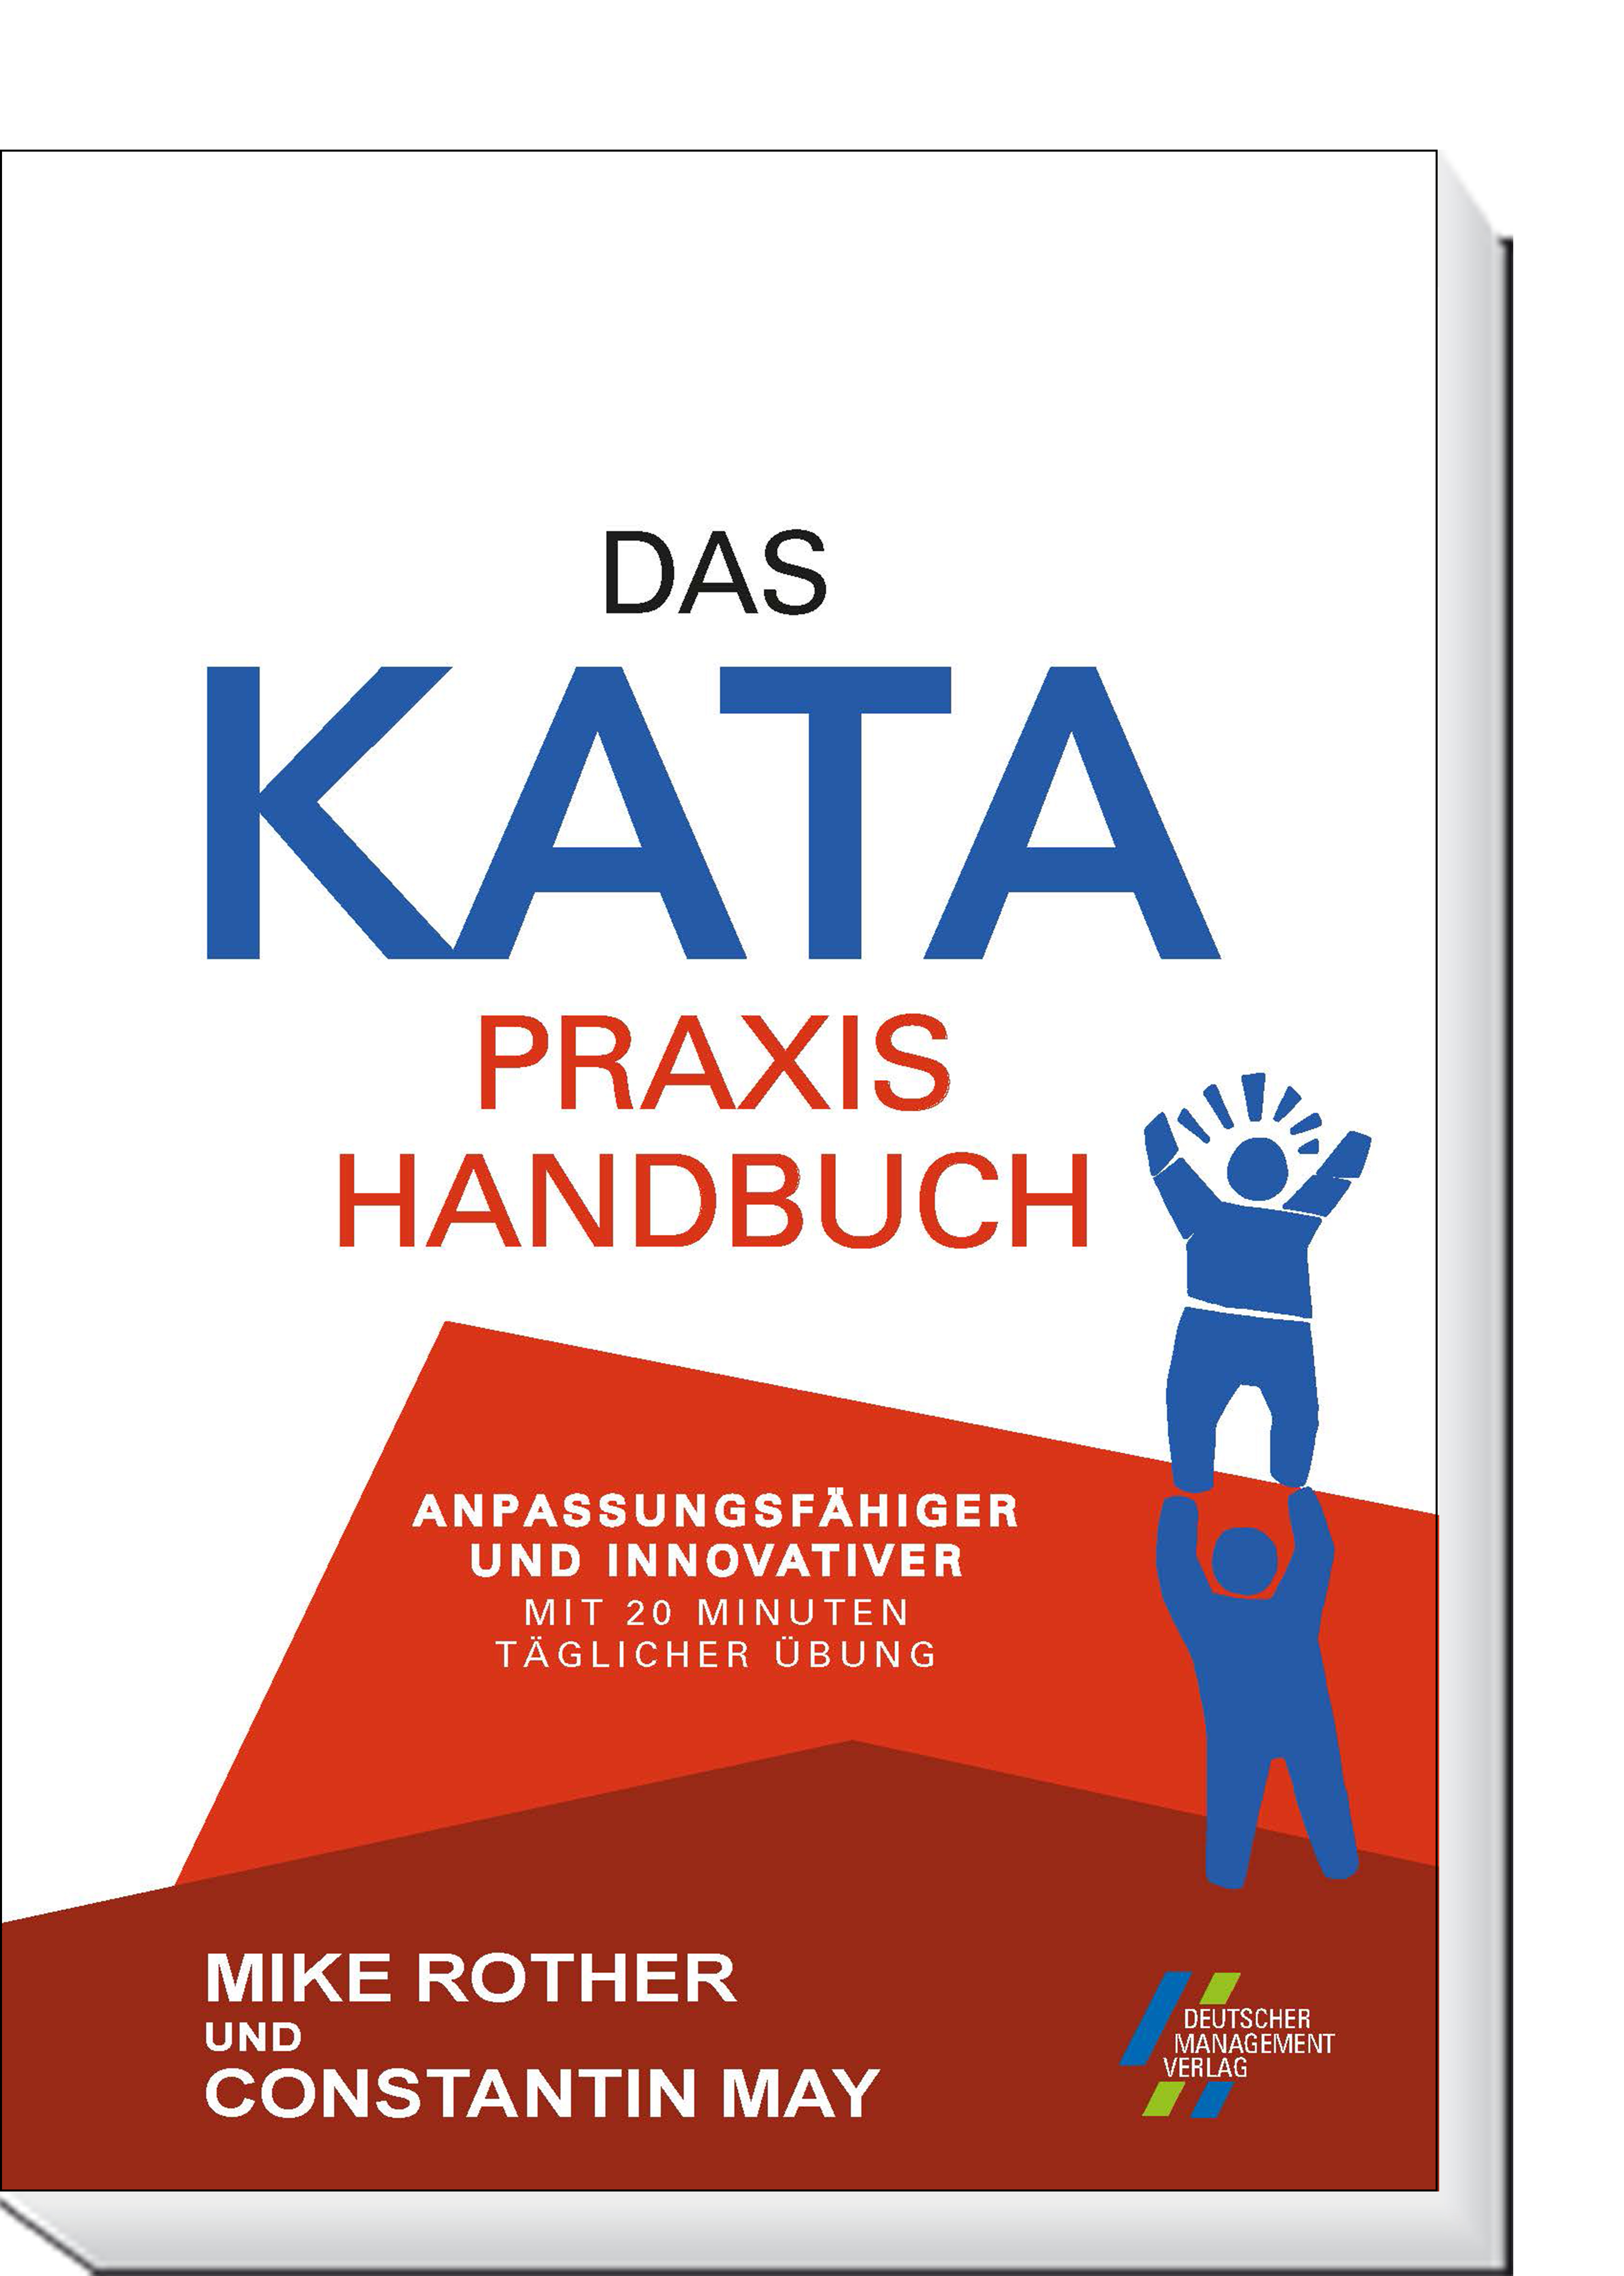 Das KATA Praxishandbuch | innovativer täglicher 20 CETPM Anpassungsfähiger mit und | Übung Minuten